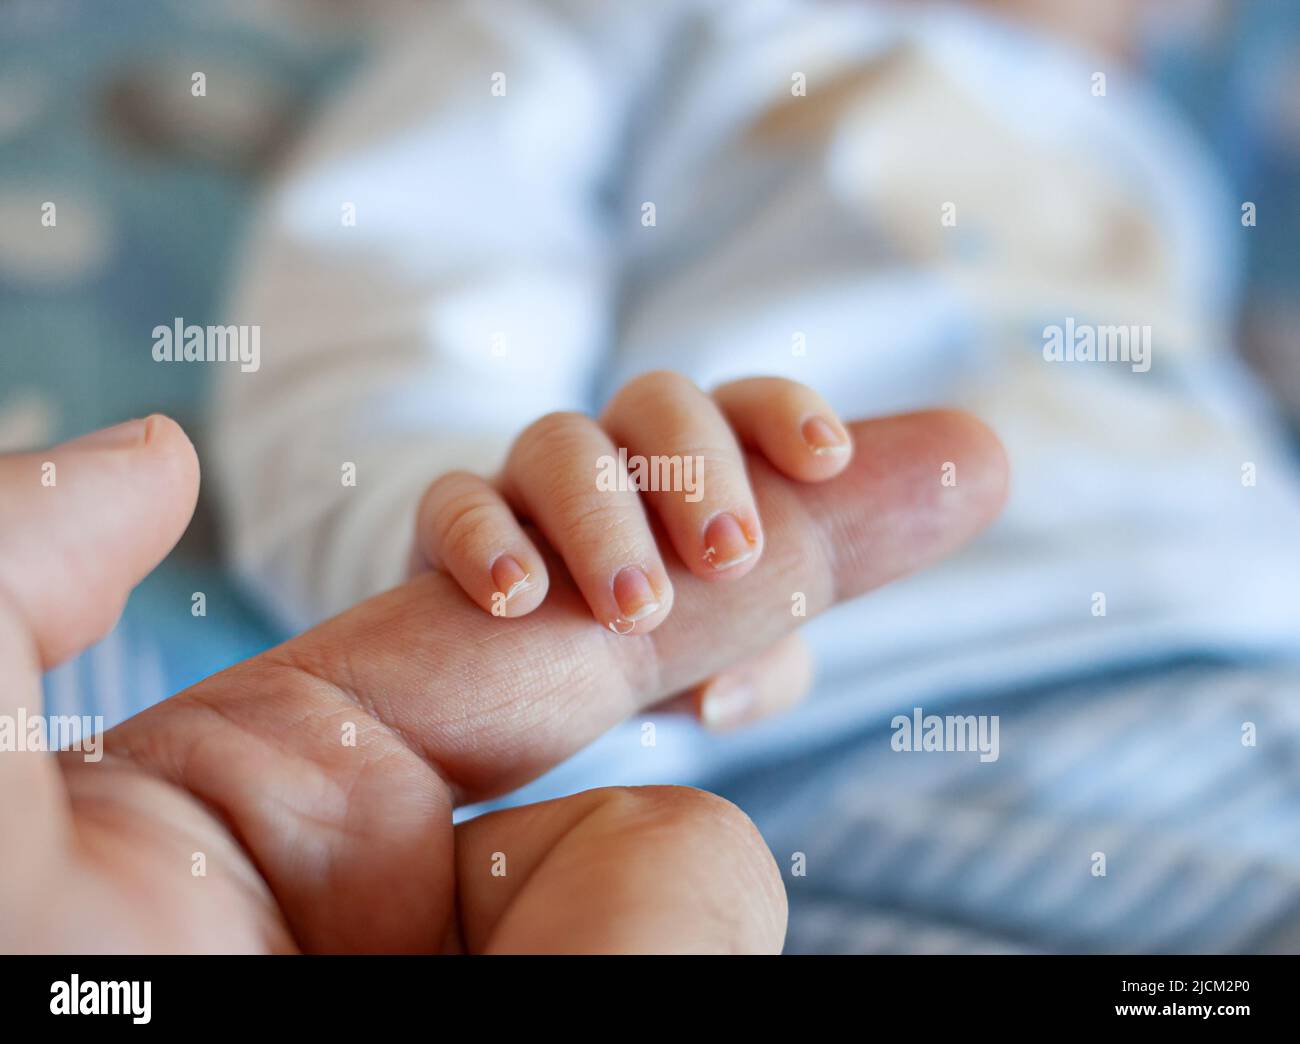 Detalle de los dedos de un recién nacido, especialmente las uñas. Los bebés recién nacidos tienen uñas largas y afiladas llenas de terminaciones nerviosas. Foto de stock